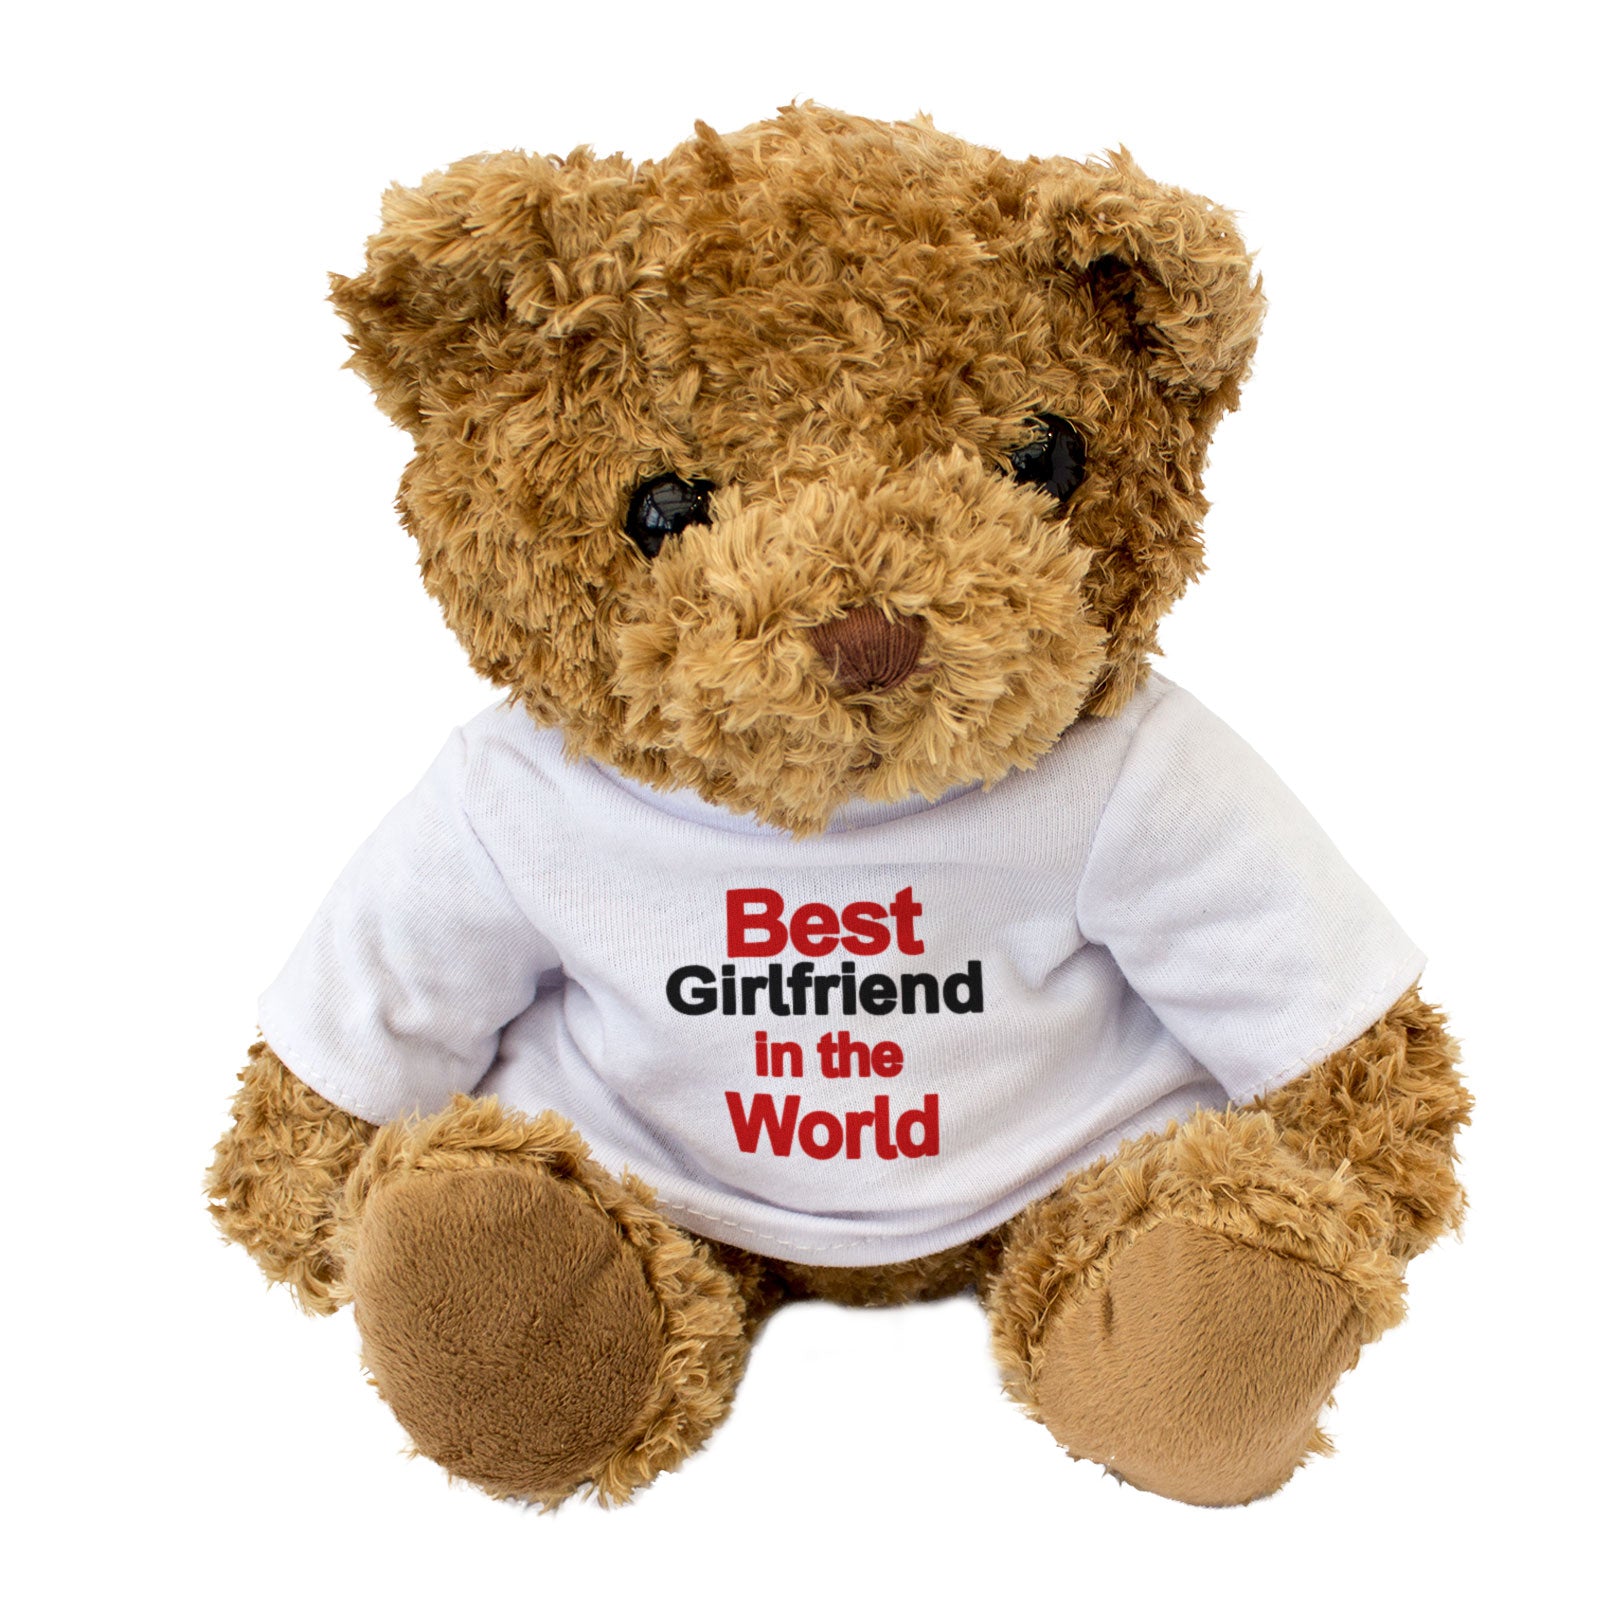 Best Girlfriend In The World Teddy Bear